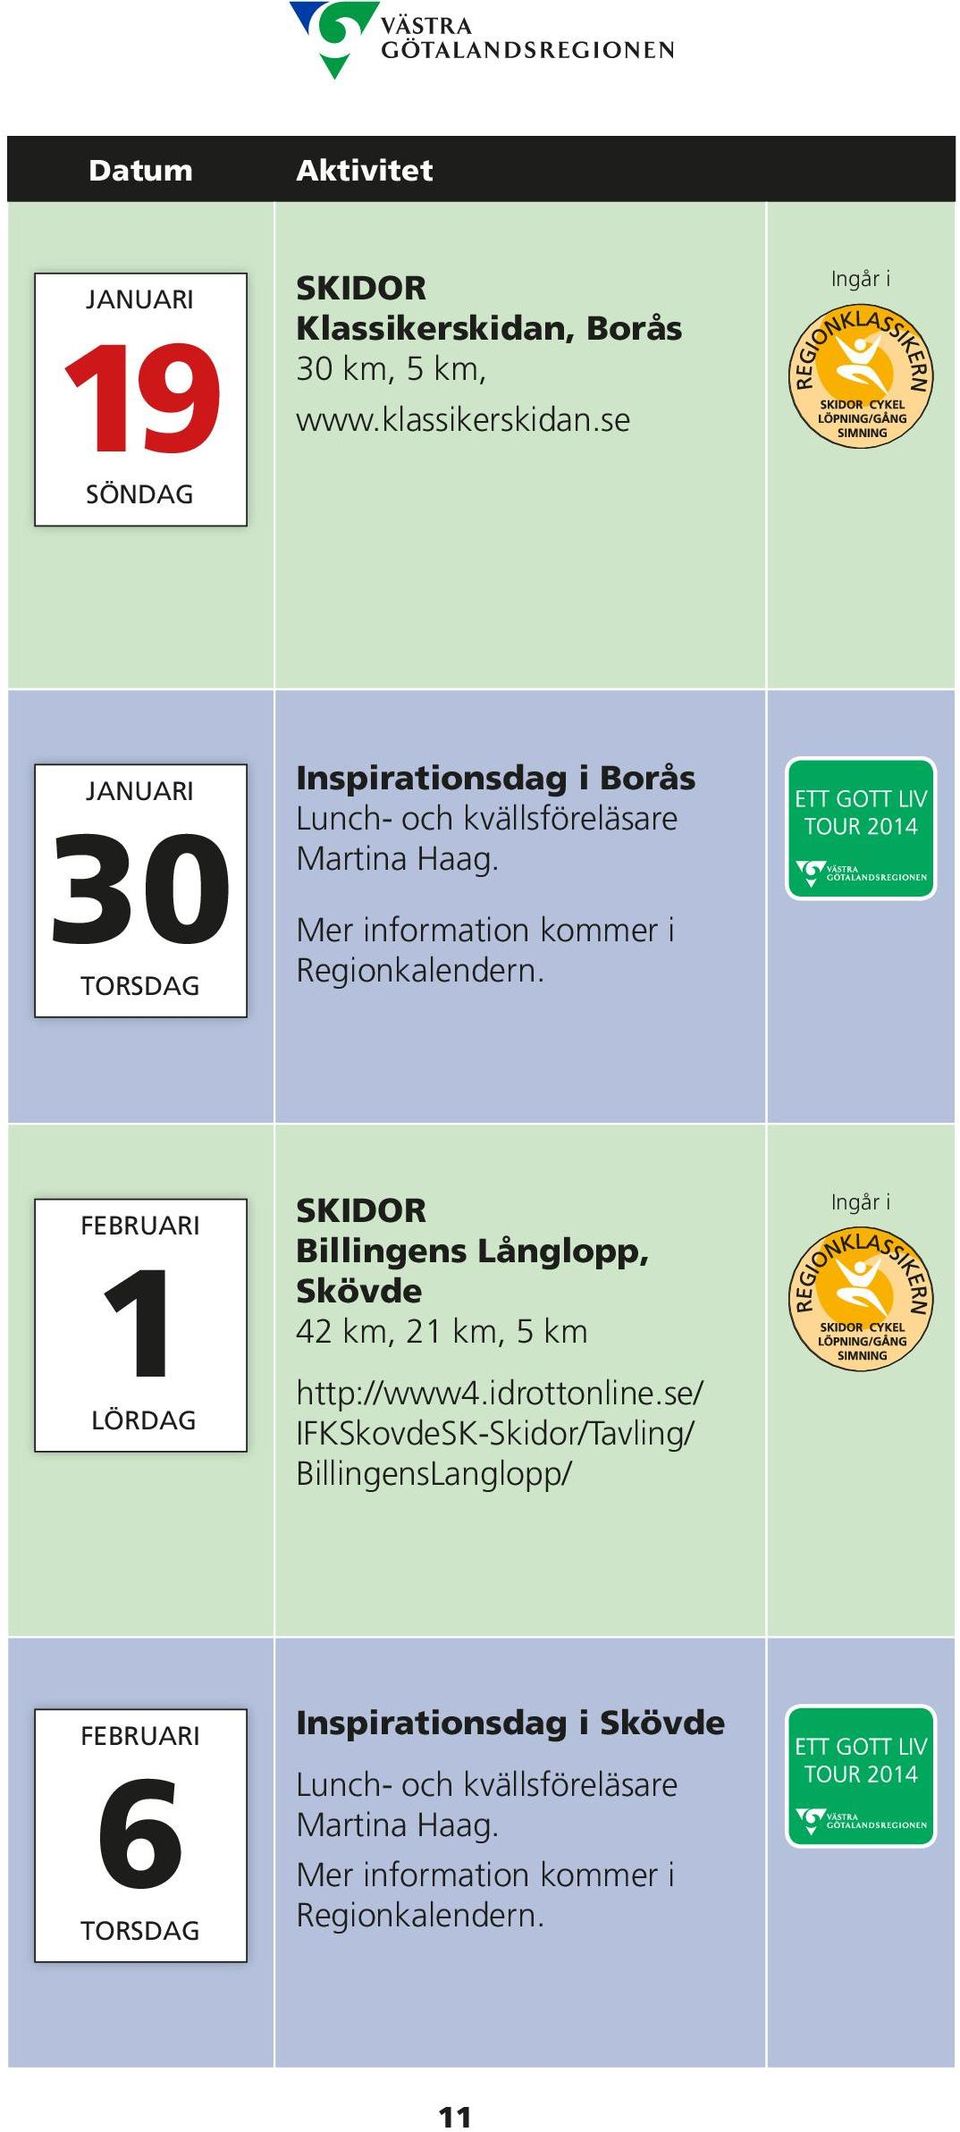 Mer information kommer i Regionkalendern. FEBRUARI 1LÖRDAG SKIDOR Billingens Långlopp, Skövde 42 km, 21 km, 5 km http://www4.